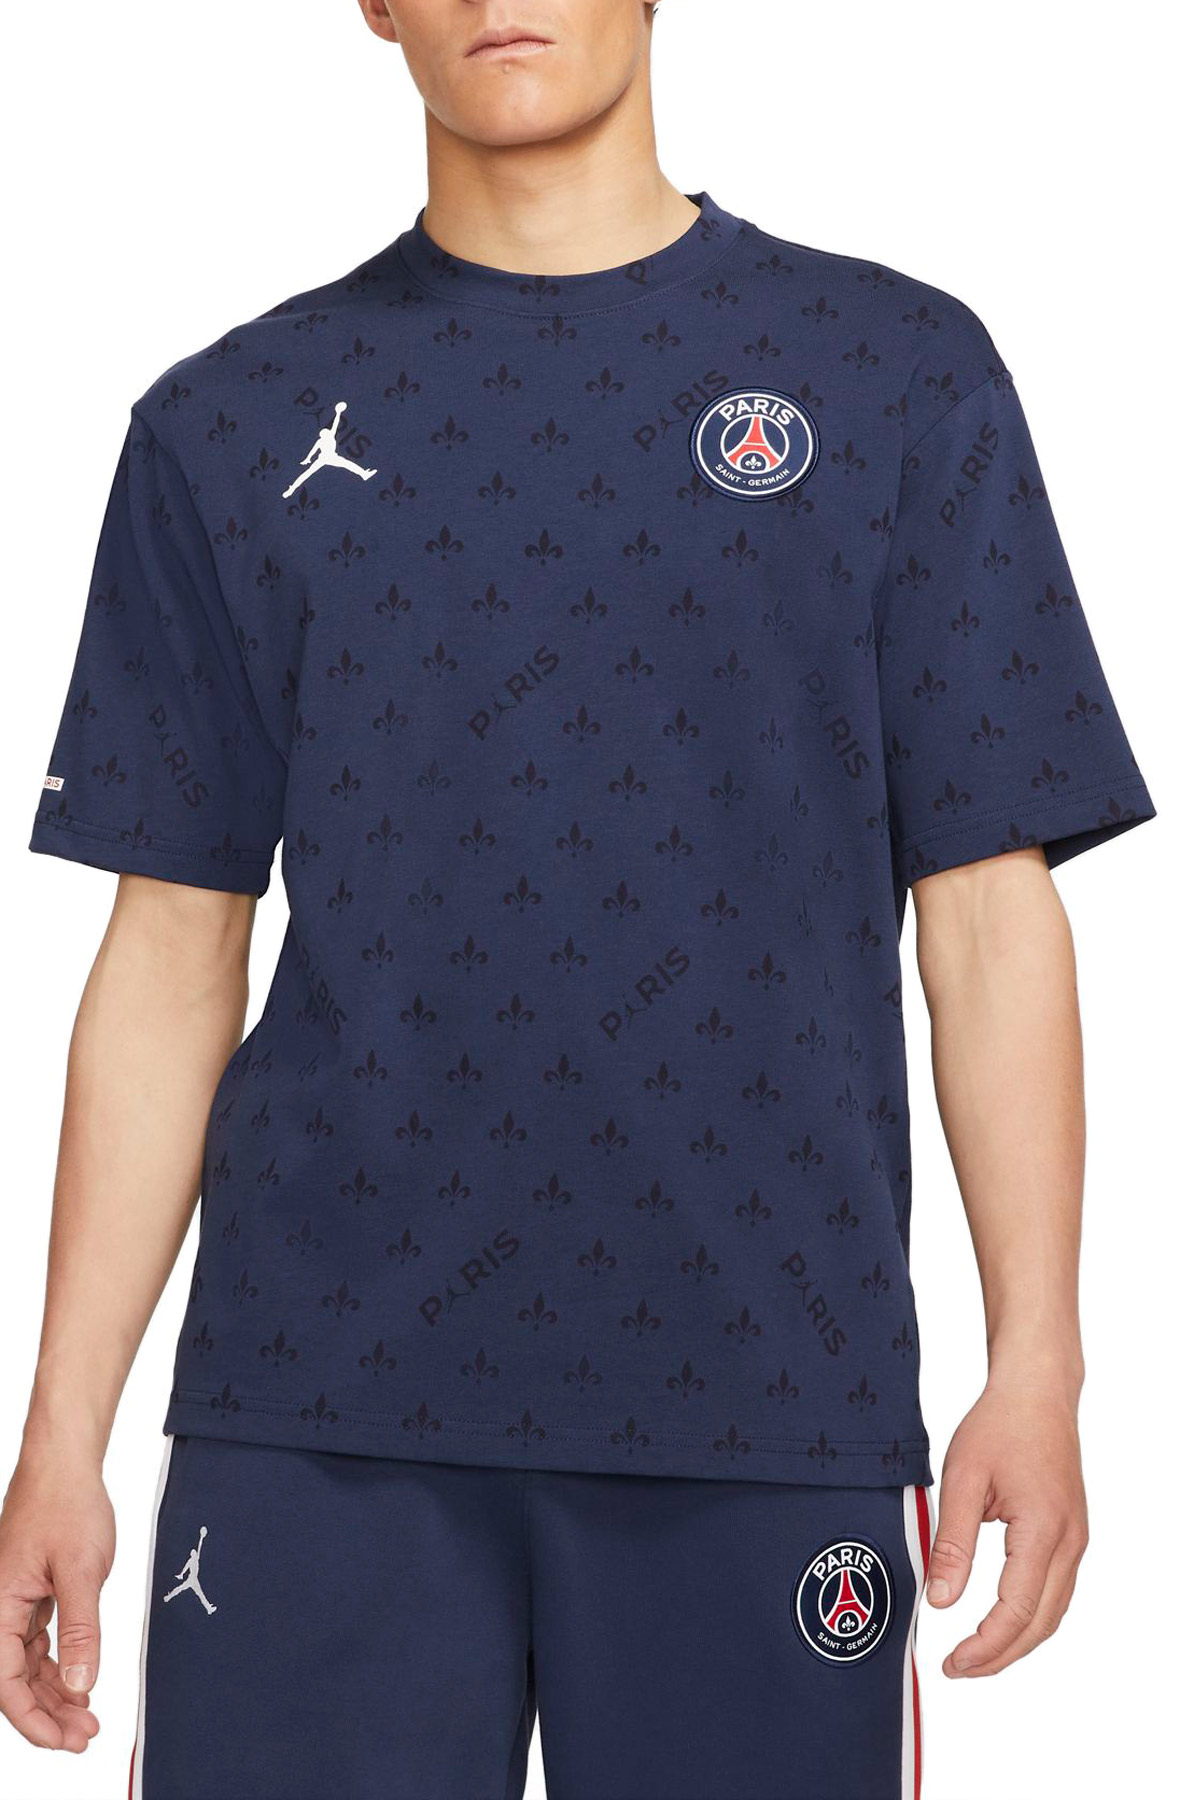 JORDAN Paris Saint-Germain Statement T-Shirt DB6508 410 - Shiekh